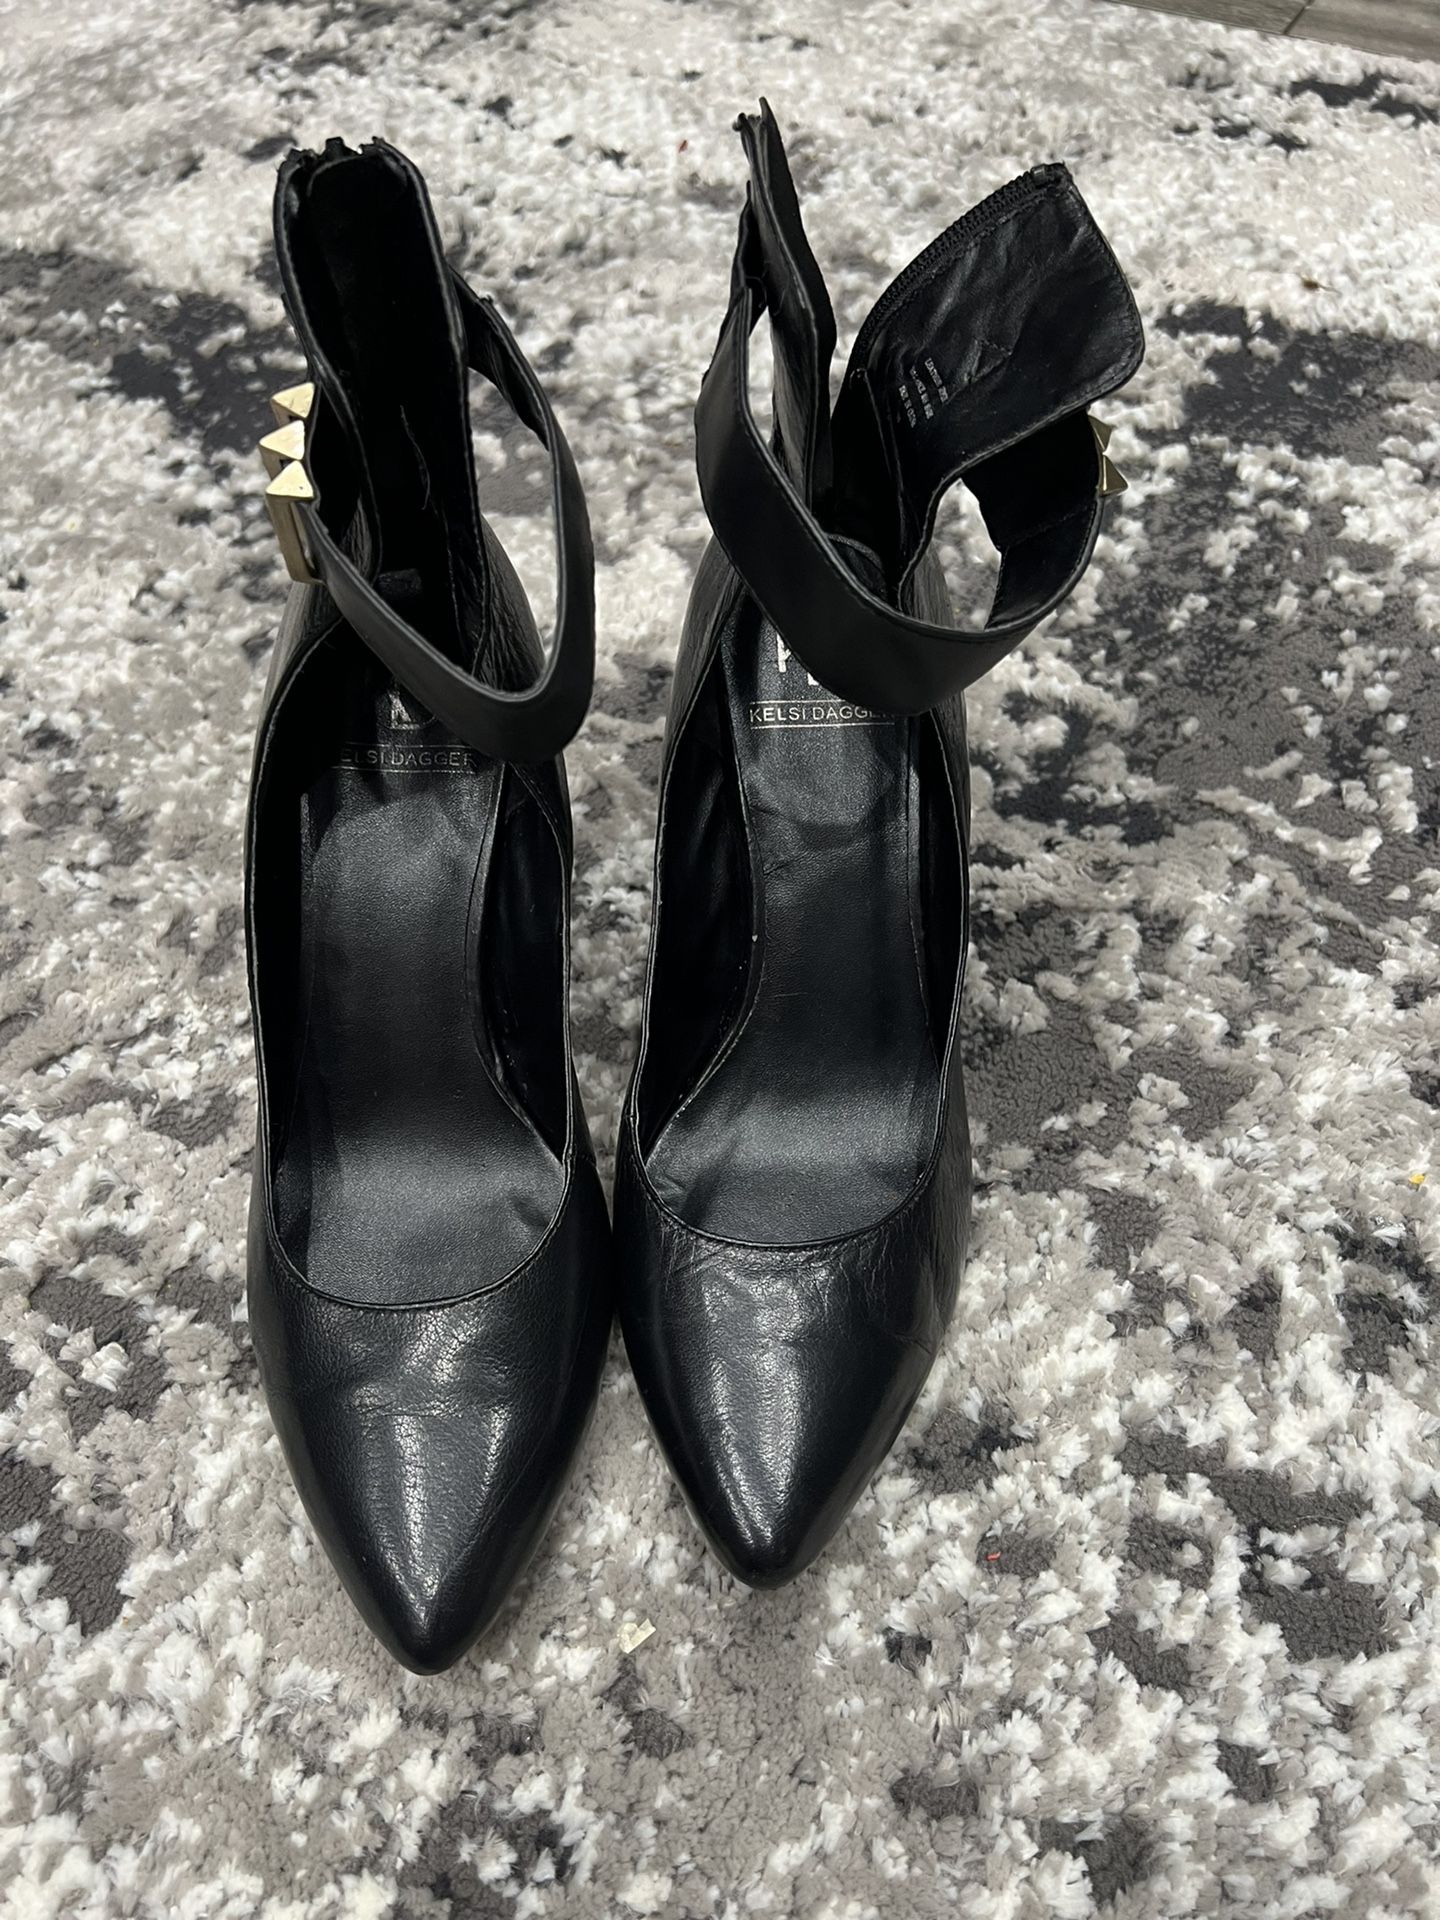 Kelsi Dagger leather woman heels size 9